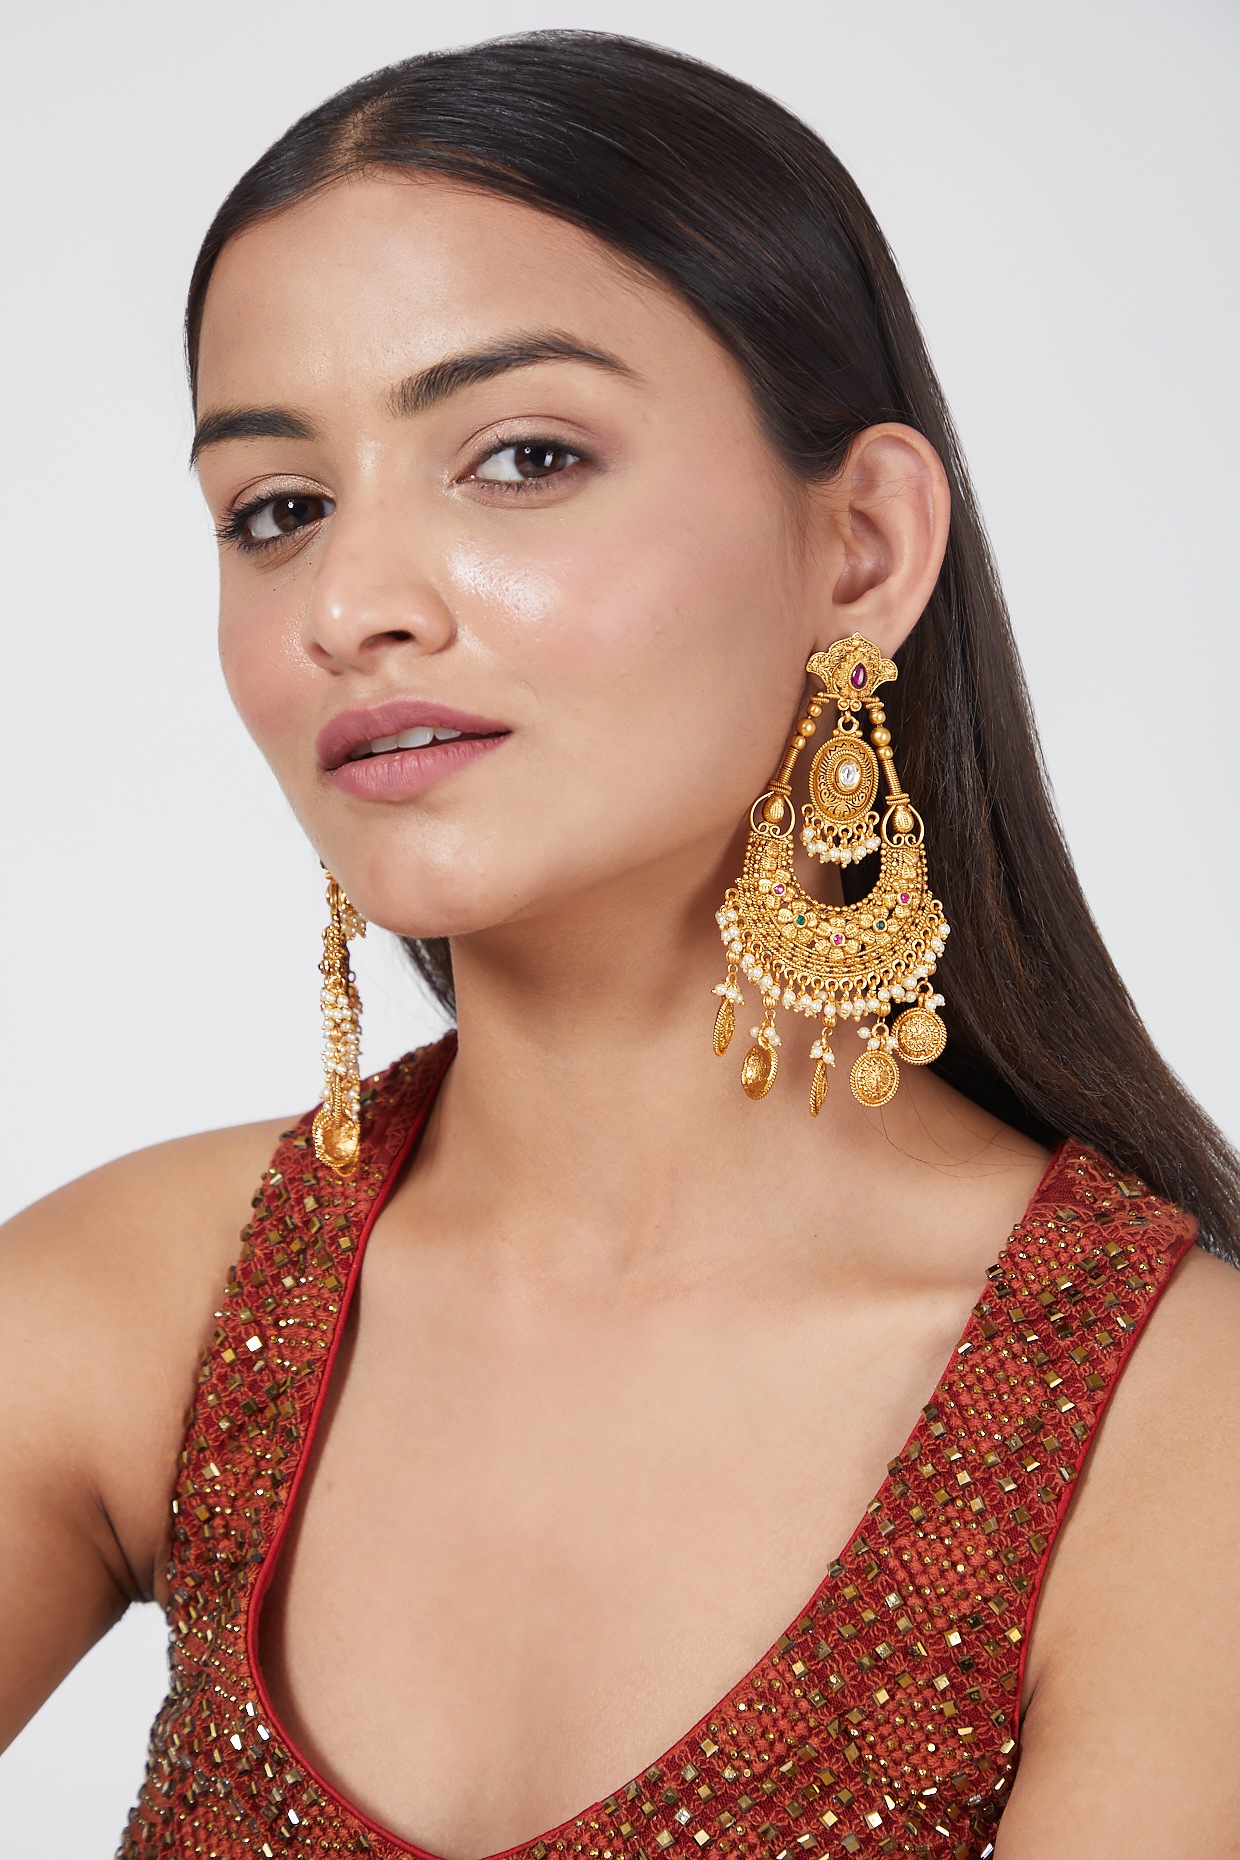 Buy 22k Solid Gold Long Earrings Chain Earrings Indian Threader Earrings-chain  Threader Dangle and Drop Earrings Gold Threader Earrings Online in India -  Etsy